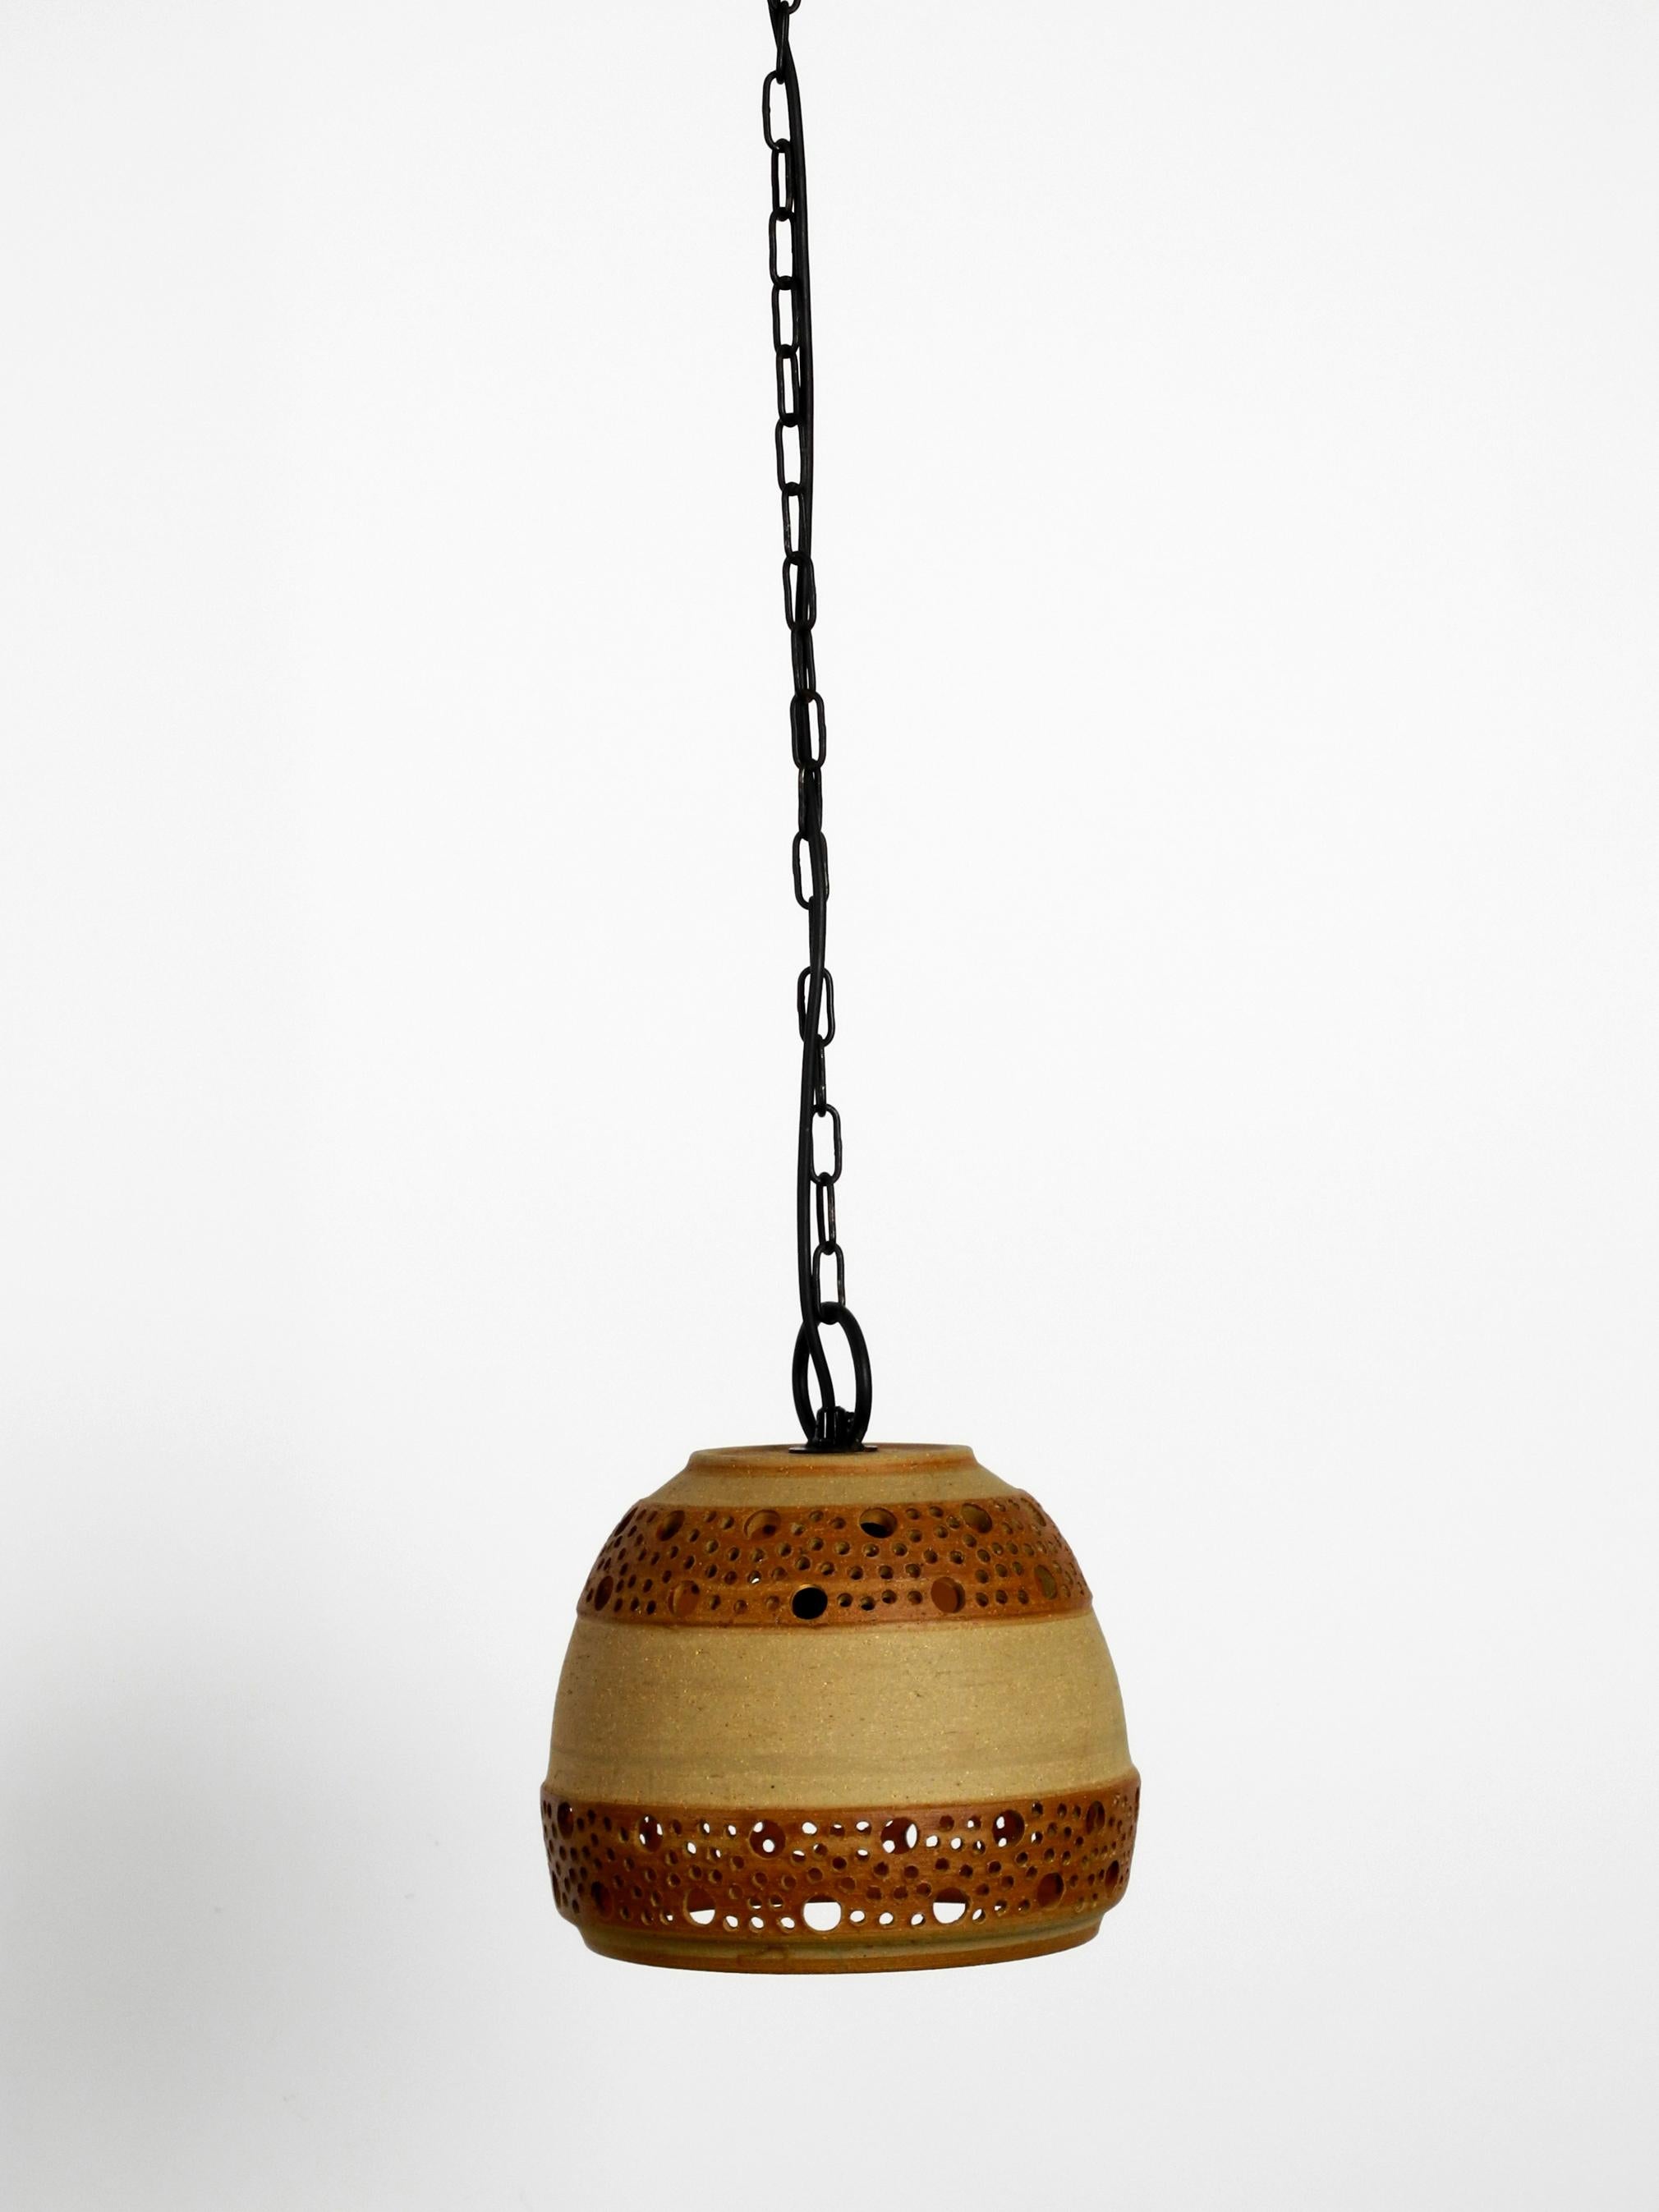 Set of 2 Rare 1960s Ceramic Pendant Lamps by P. Bovin, Bornholm, Denmark 1